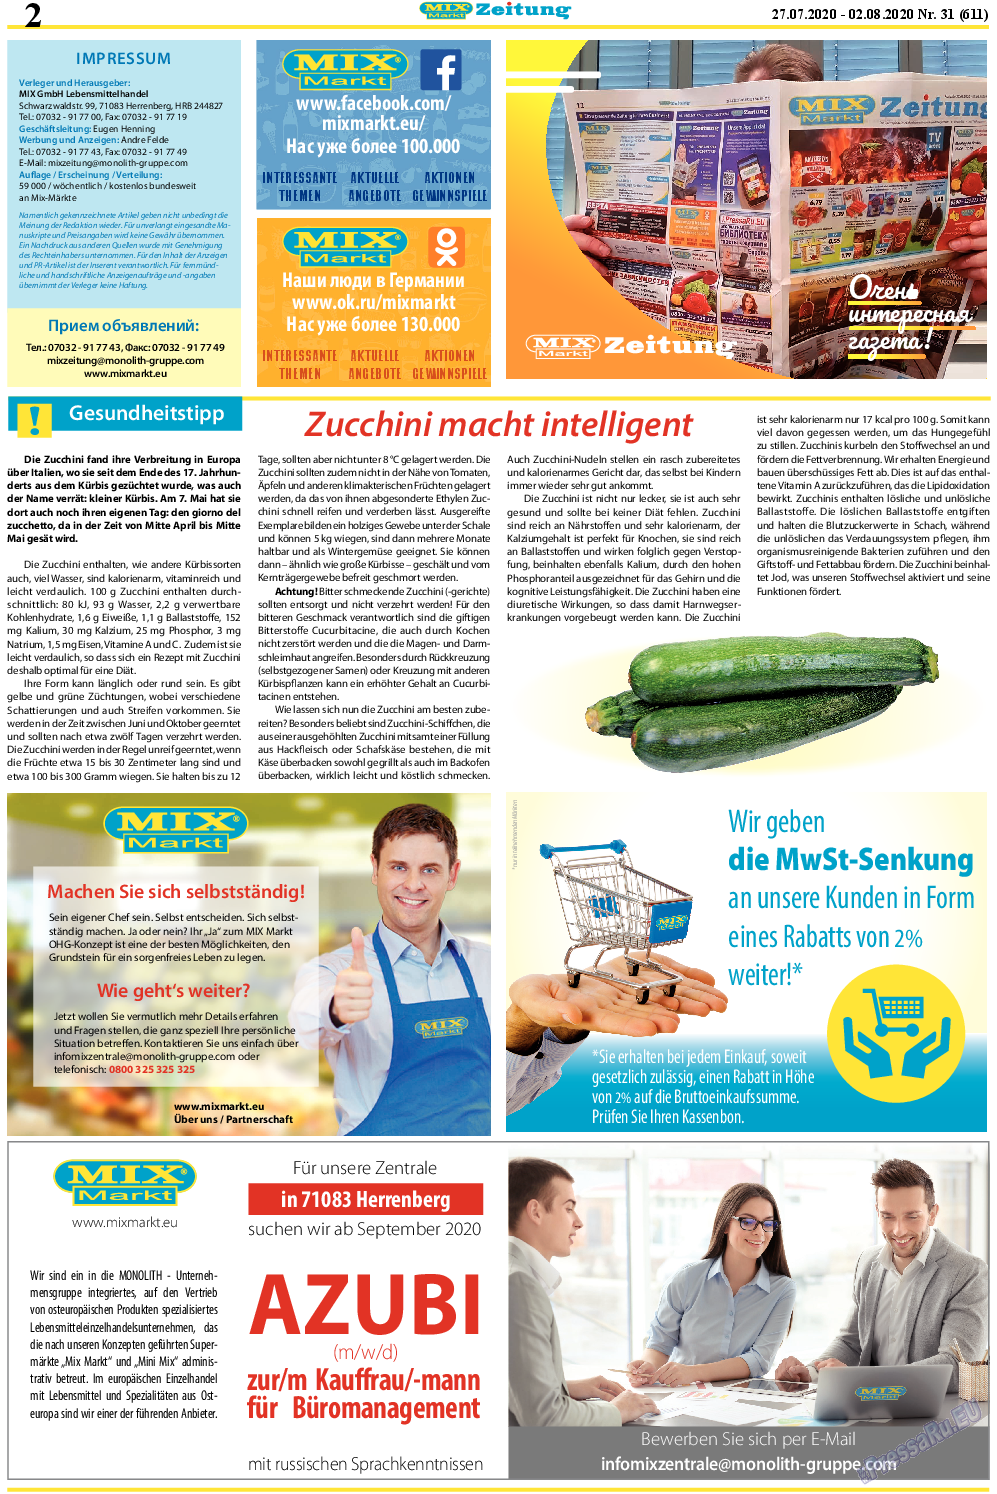 MIX-Markt Zeitung, газета. 2020 №31 стр.2